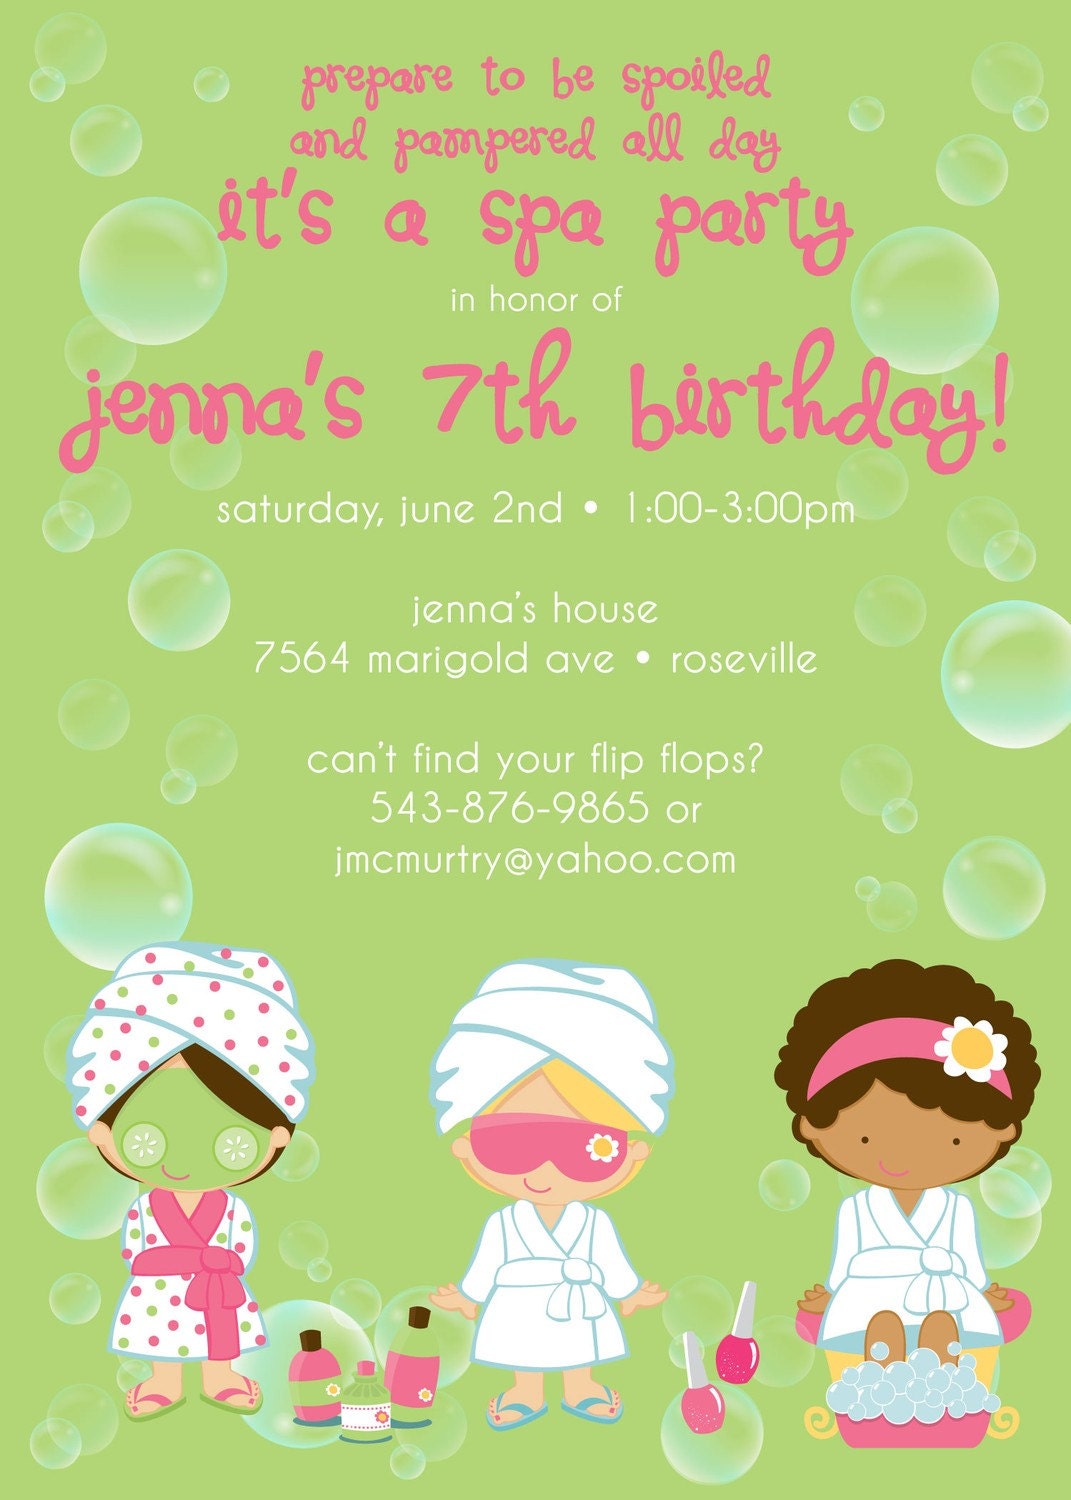  Birthday Party on Spa Party Birthday   Custom Digital Birthday Party Invitation Invite